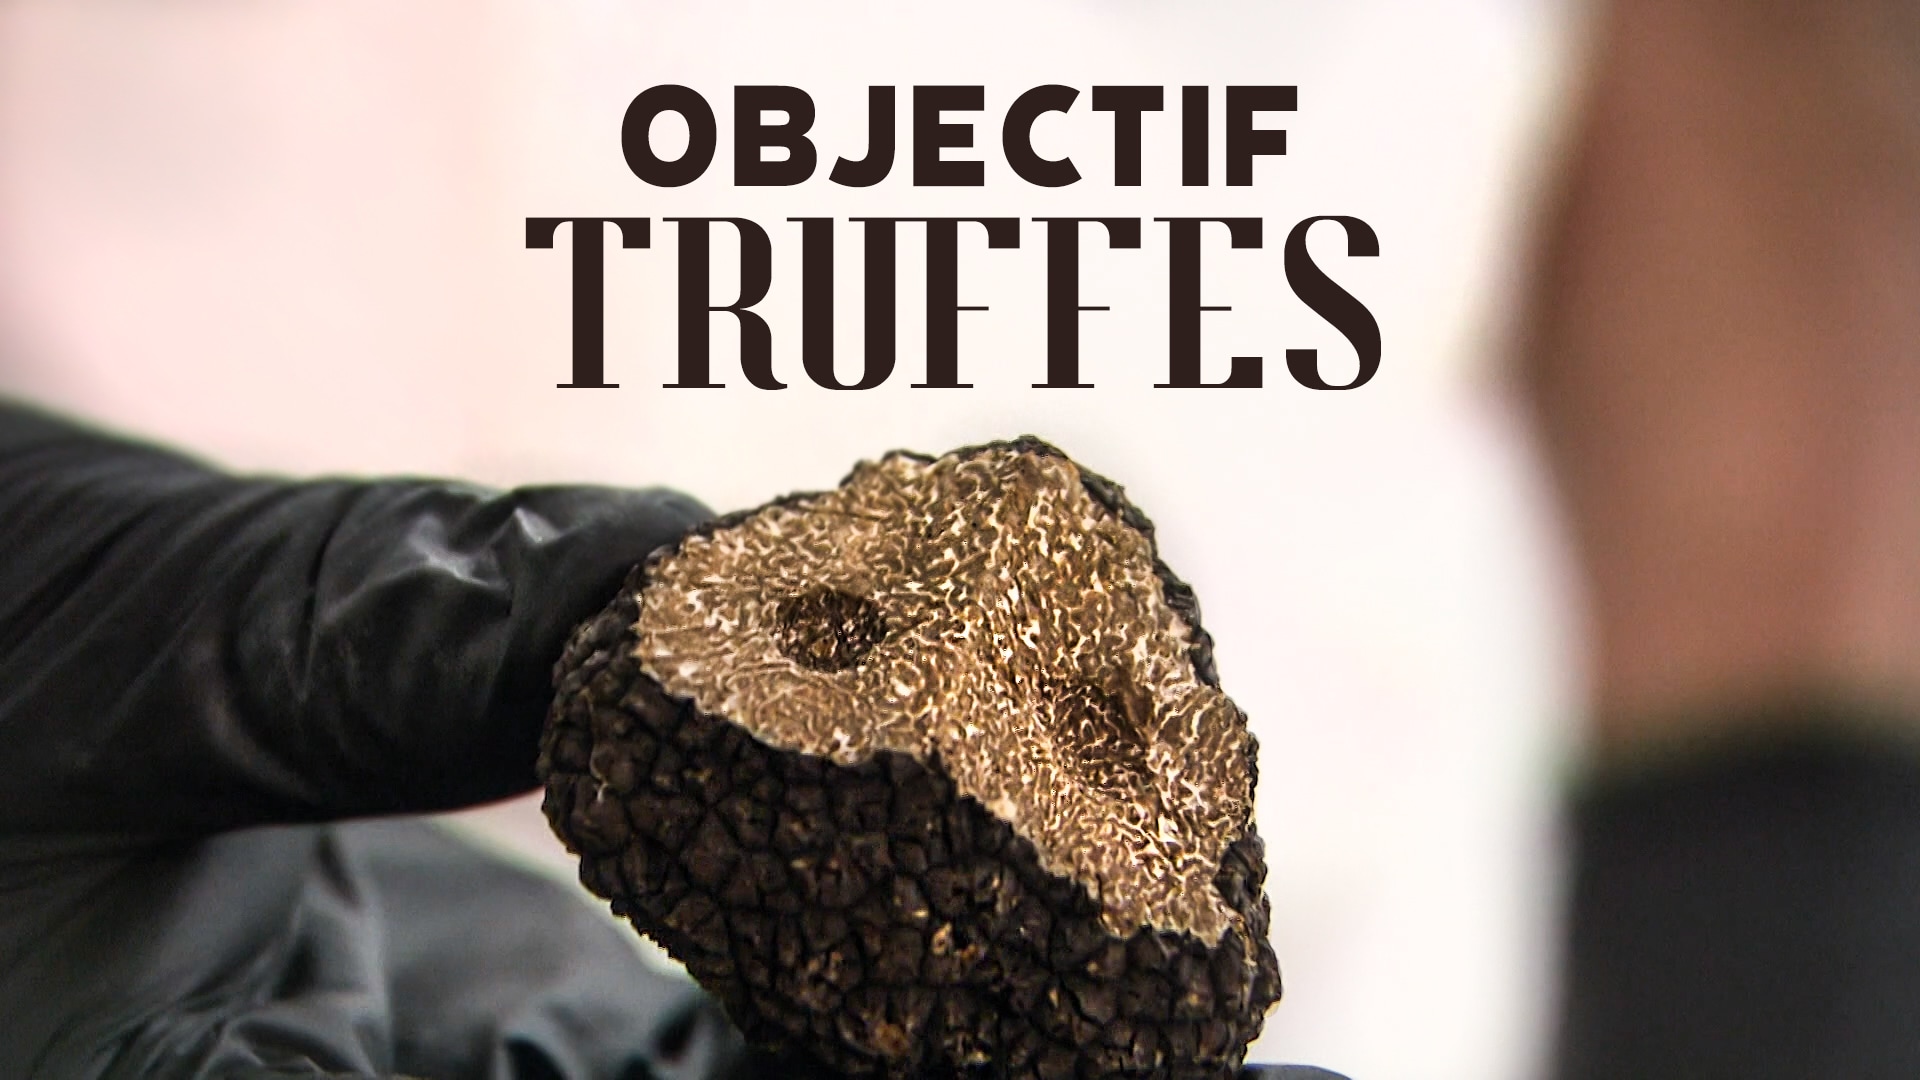 Objectif truffes